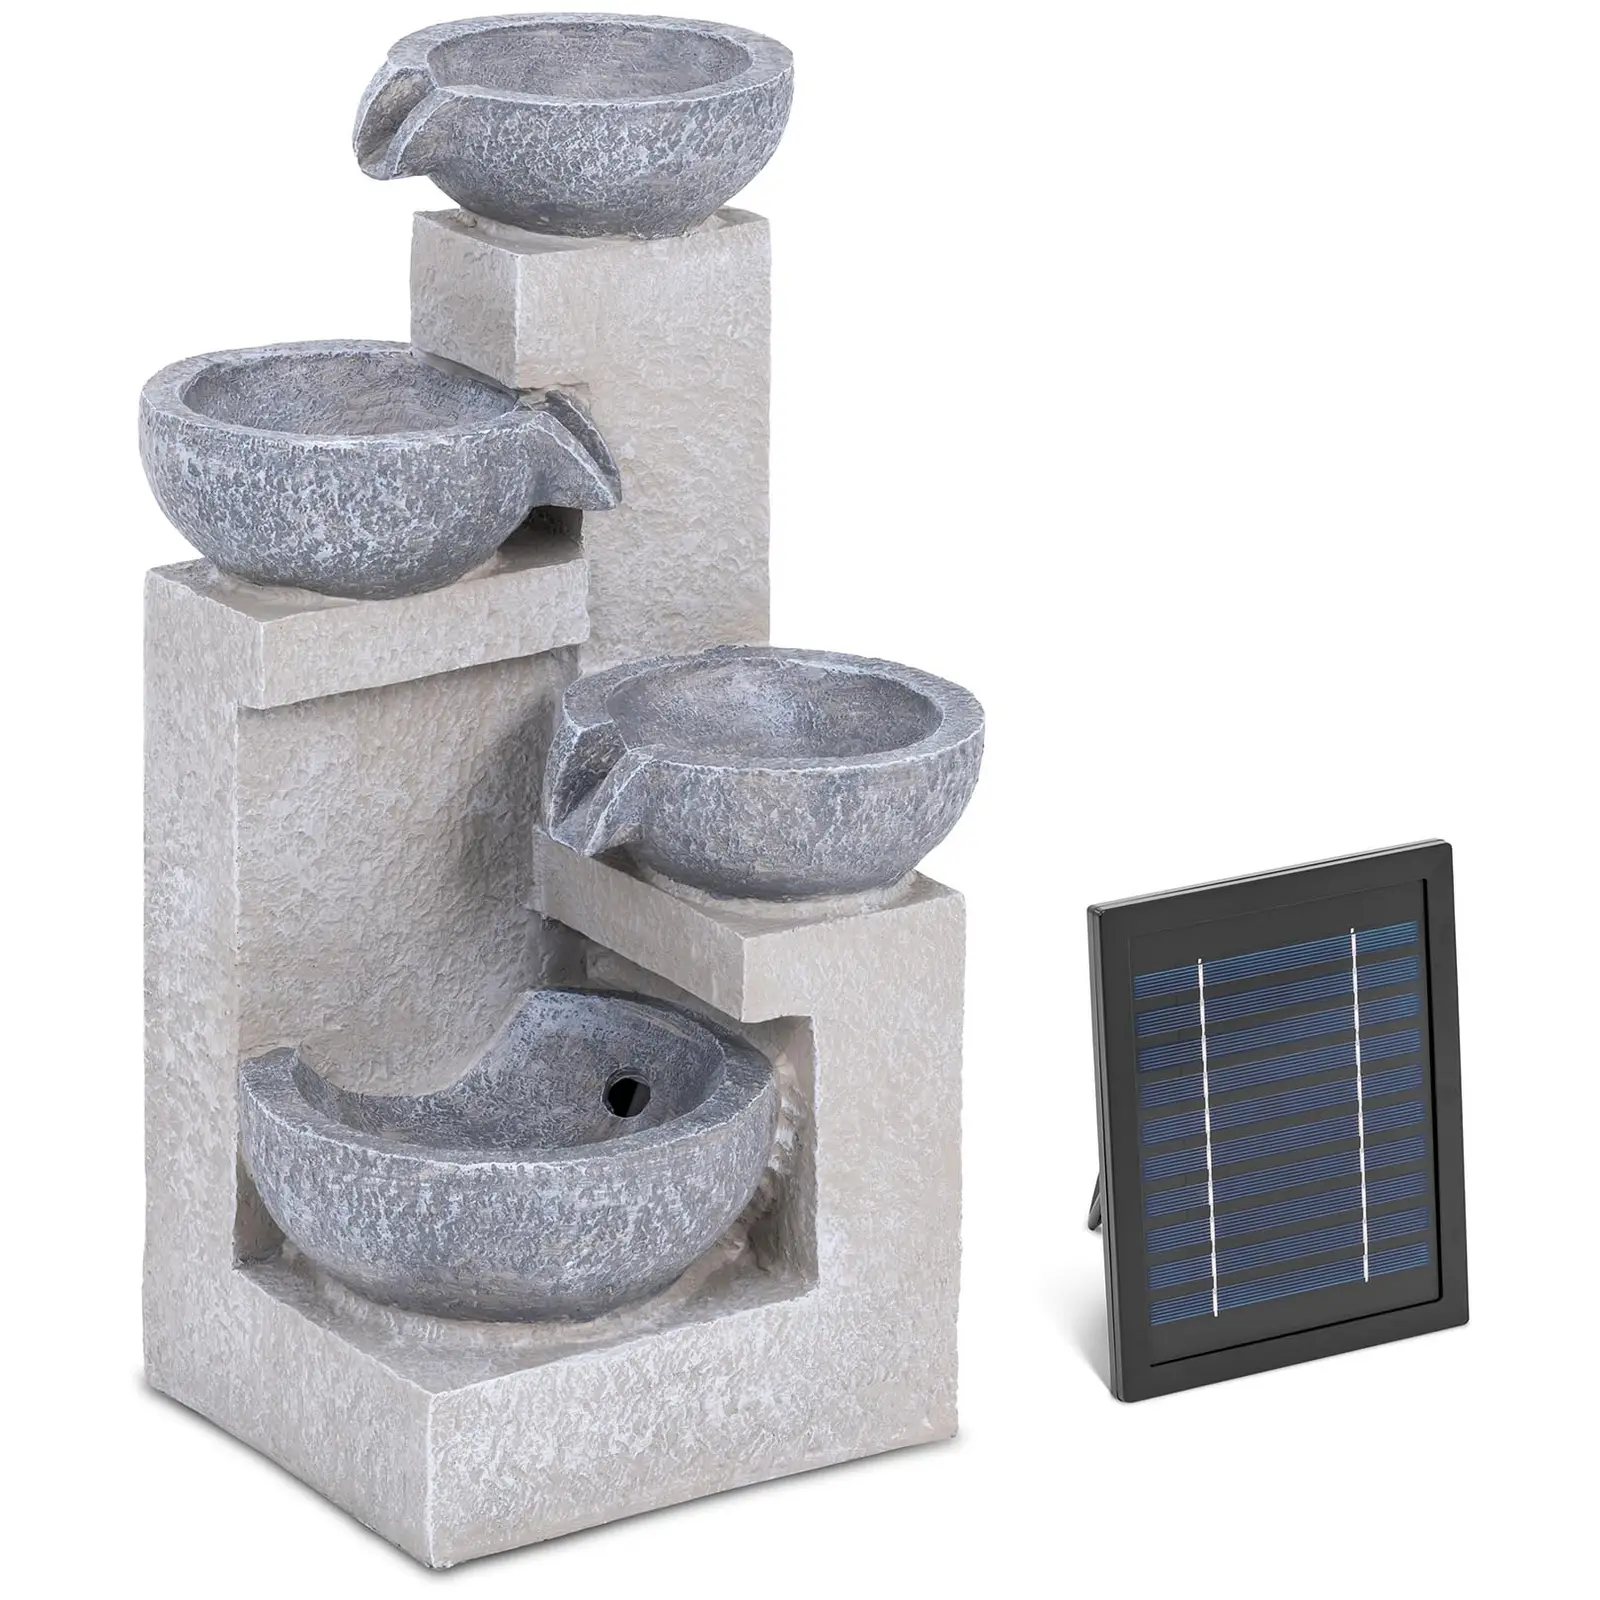 Fontanna ogrodowa solarna - 4 misy na ściance betonowej - oświetlenie LED